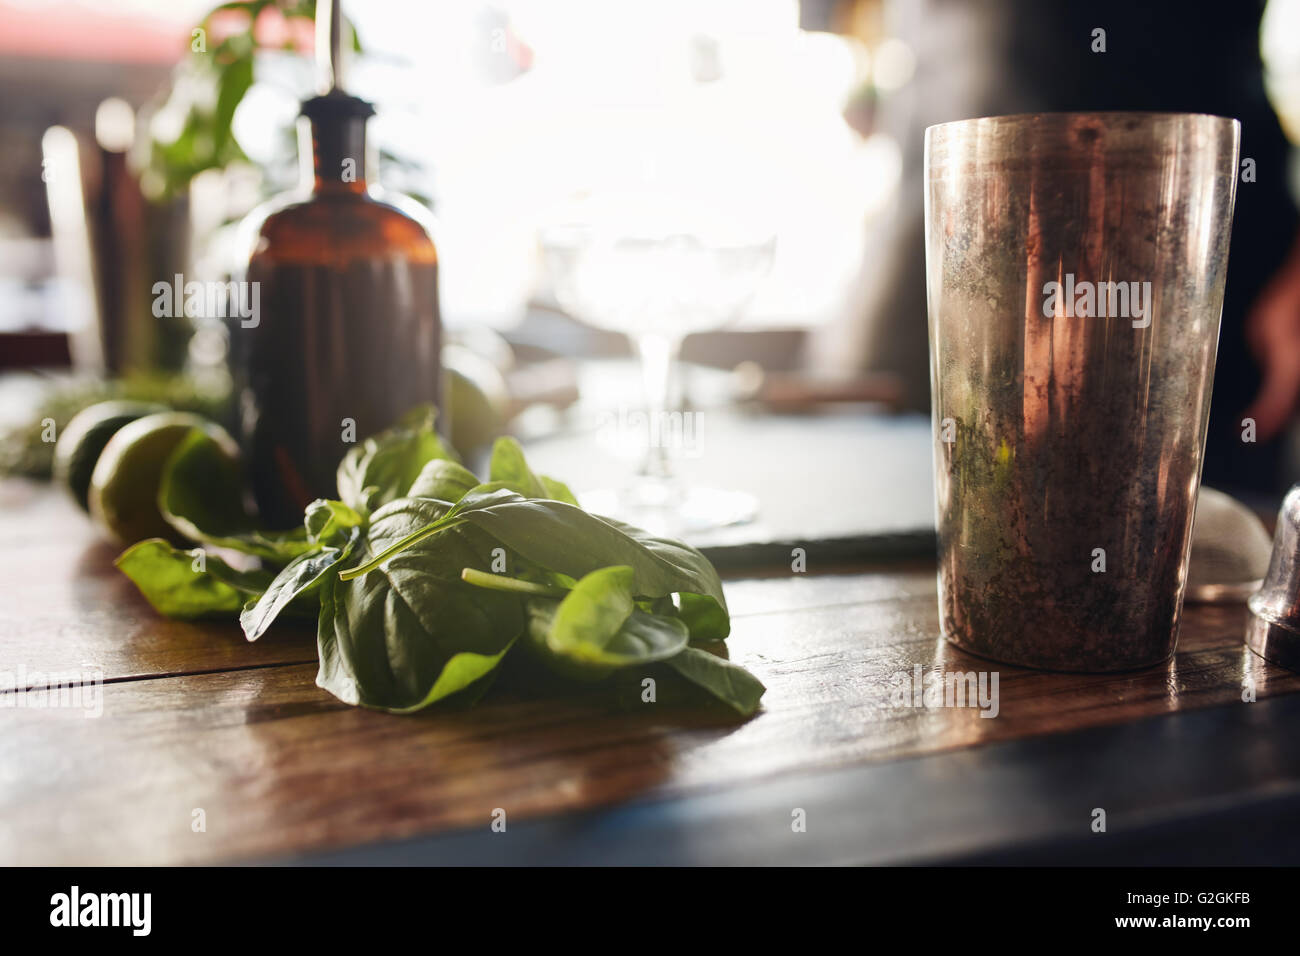 Photo de gros plan avec feuilles de basilic shaker et d'autres ingrédients sur table au bar. Banque D'Images